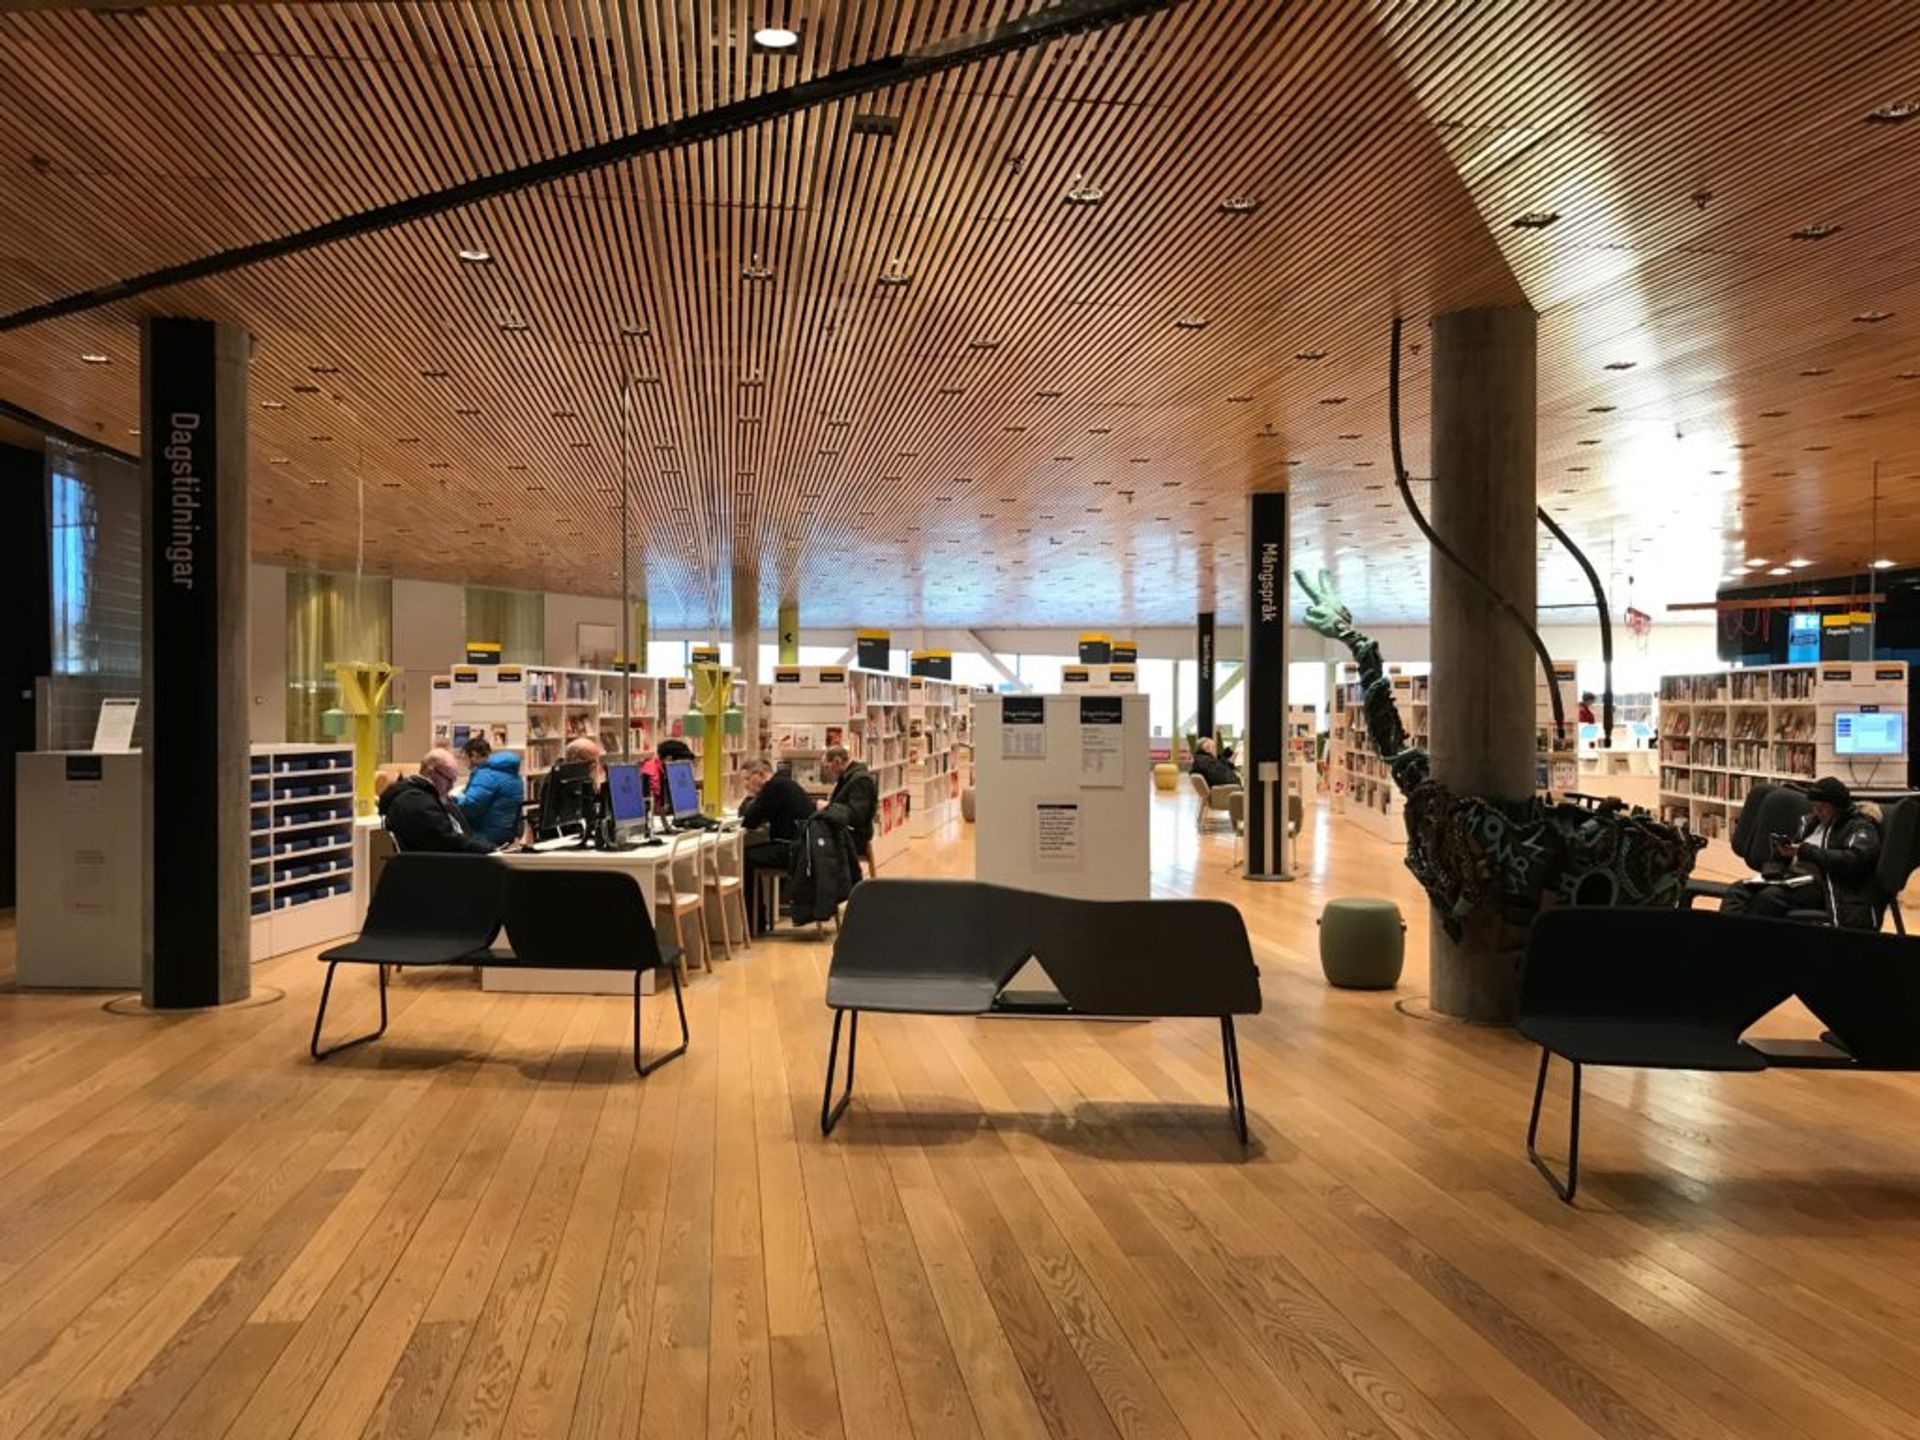 Umea Library